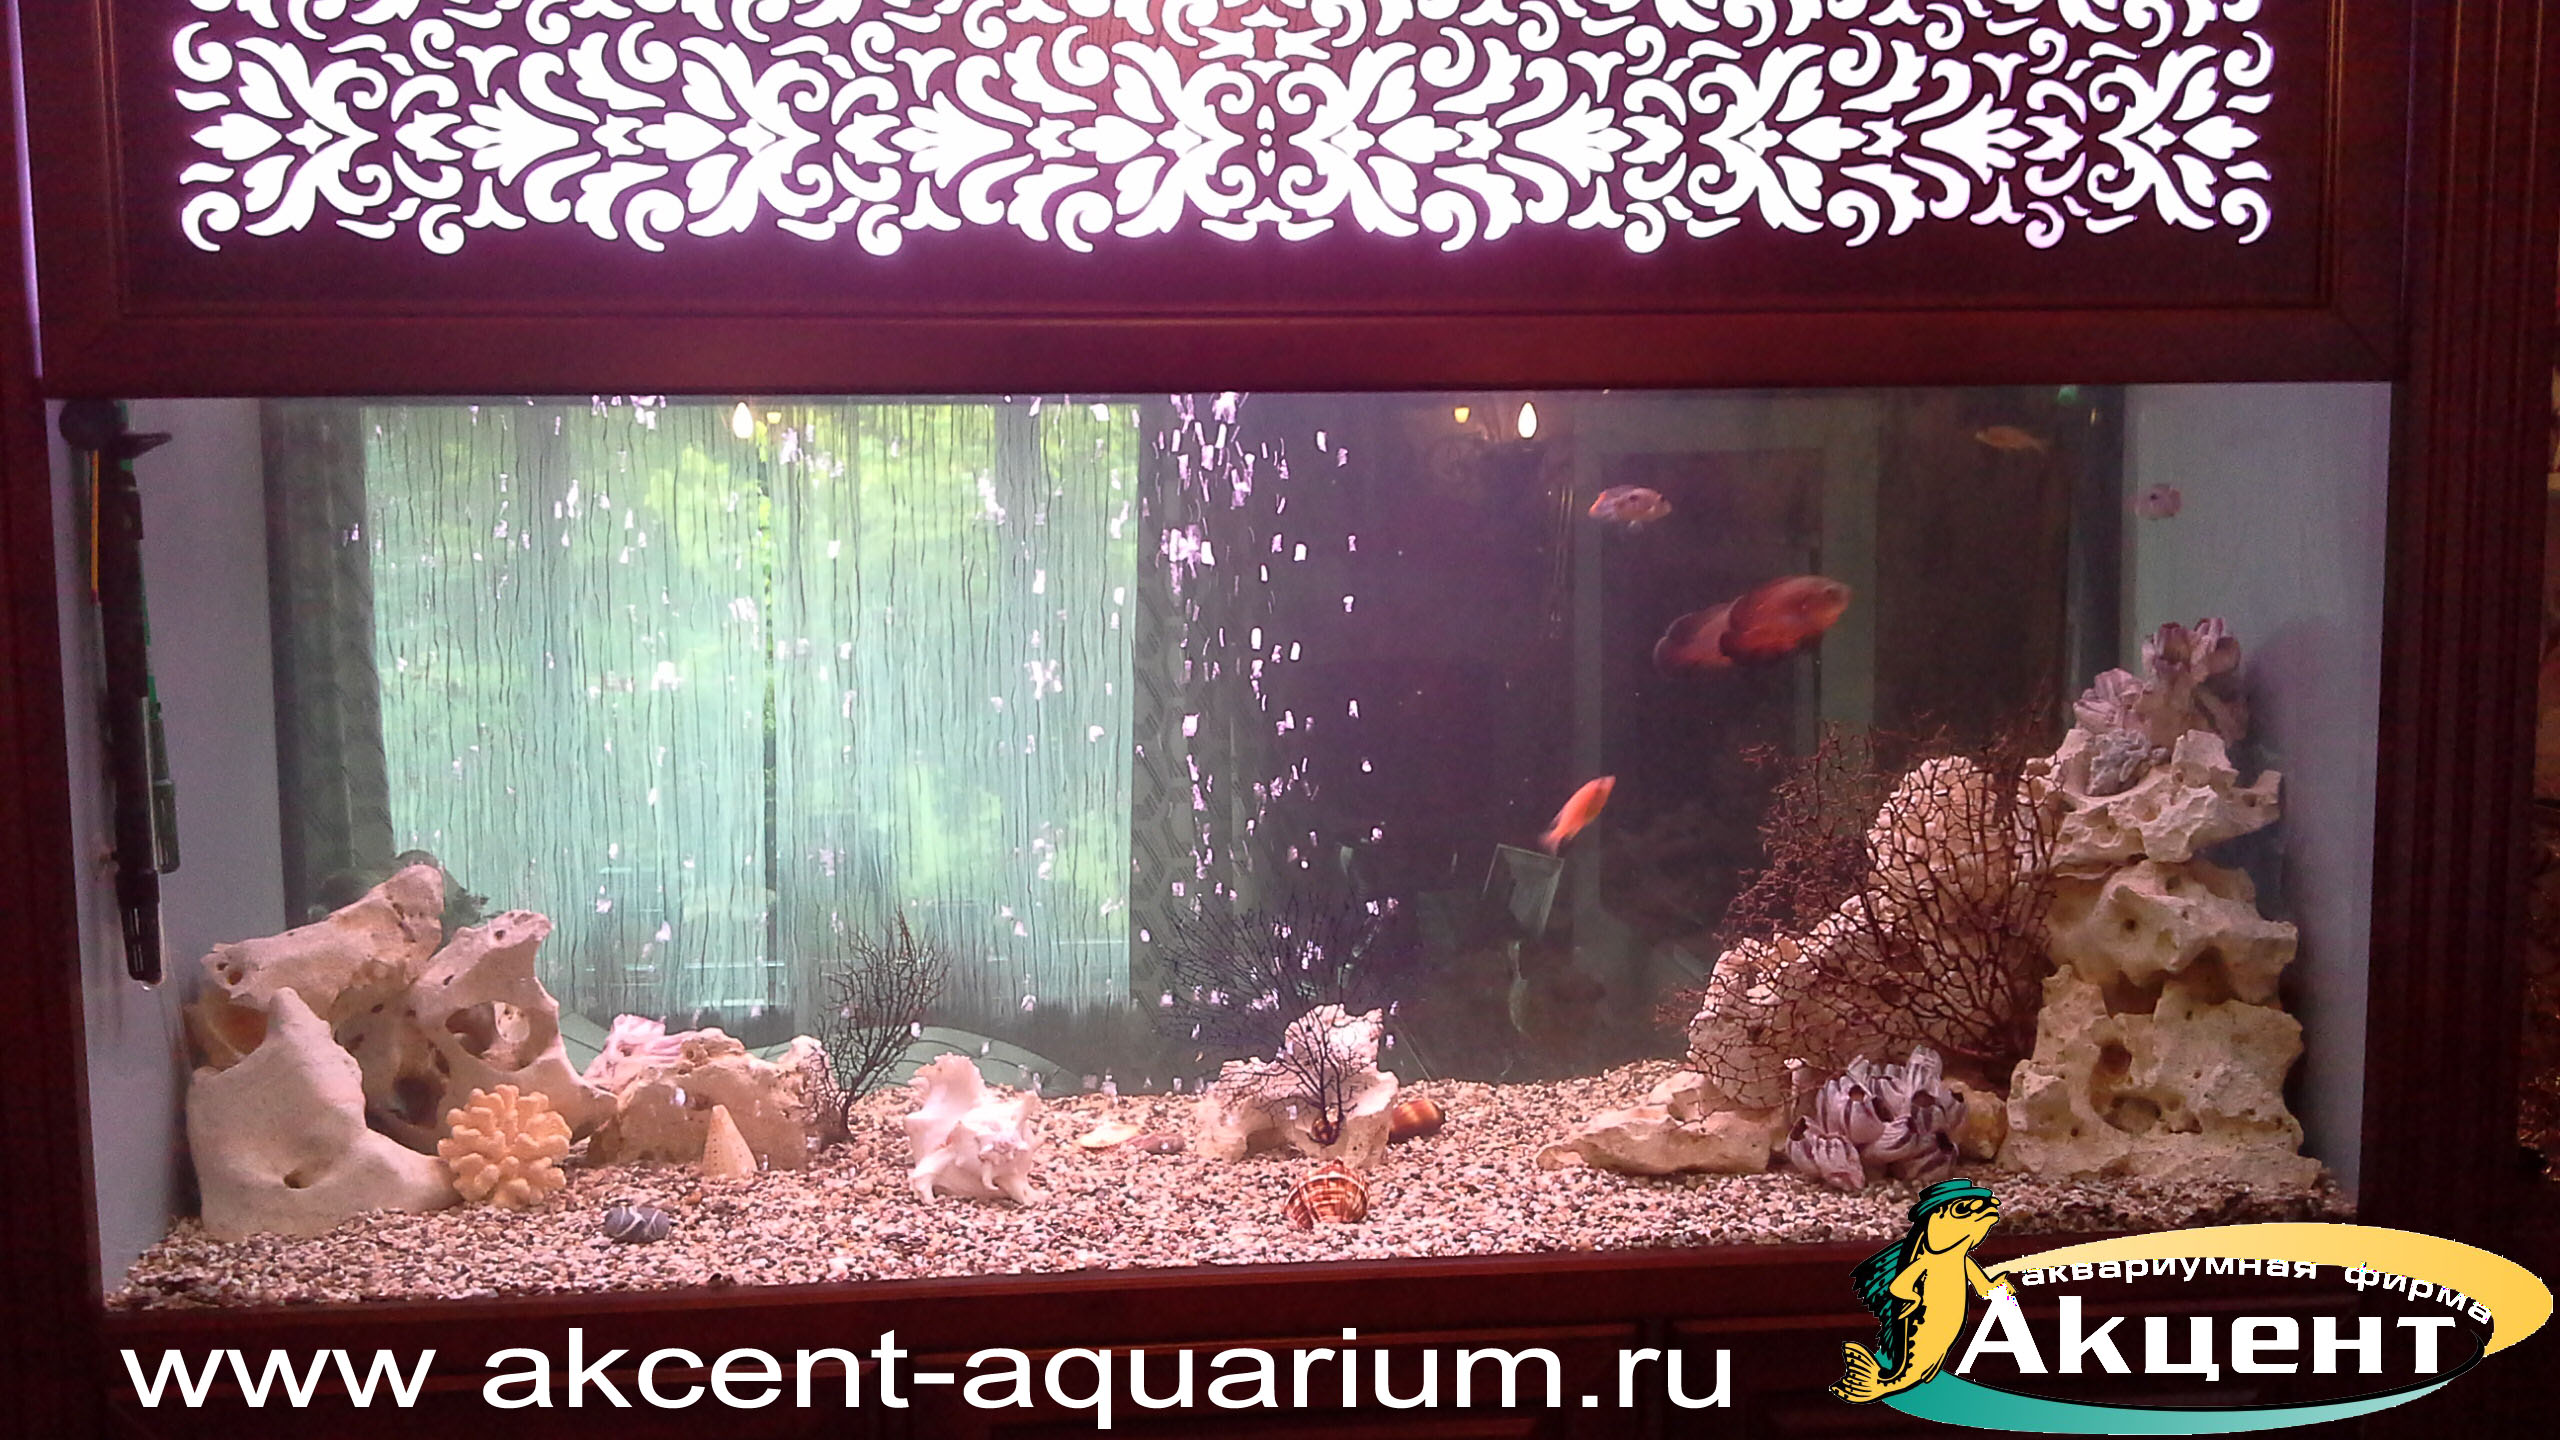 Акцент-аквариум,аквариум просмотровый 1000 литров встроенный в стену, кенийский камень, набор декоративных кораллов